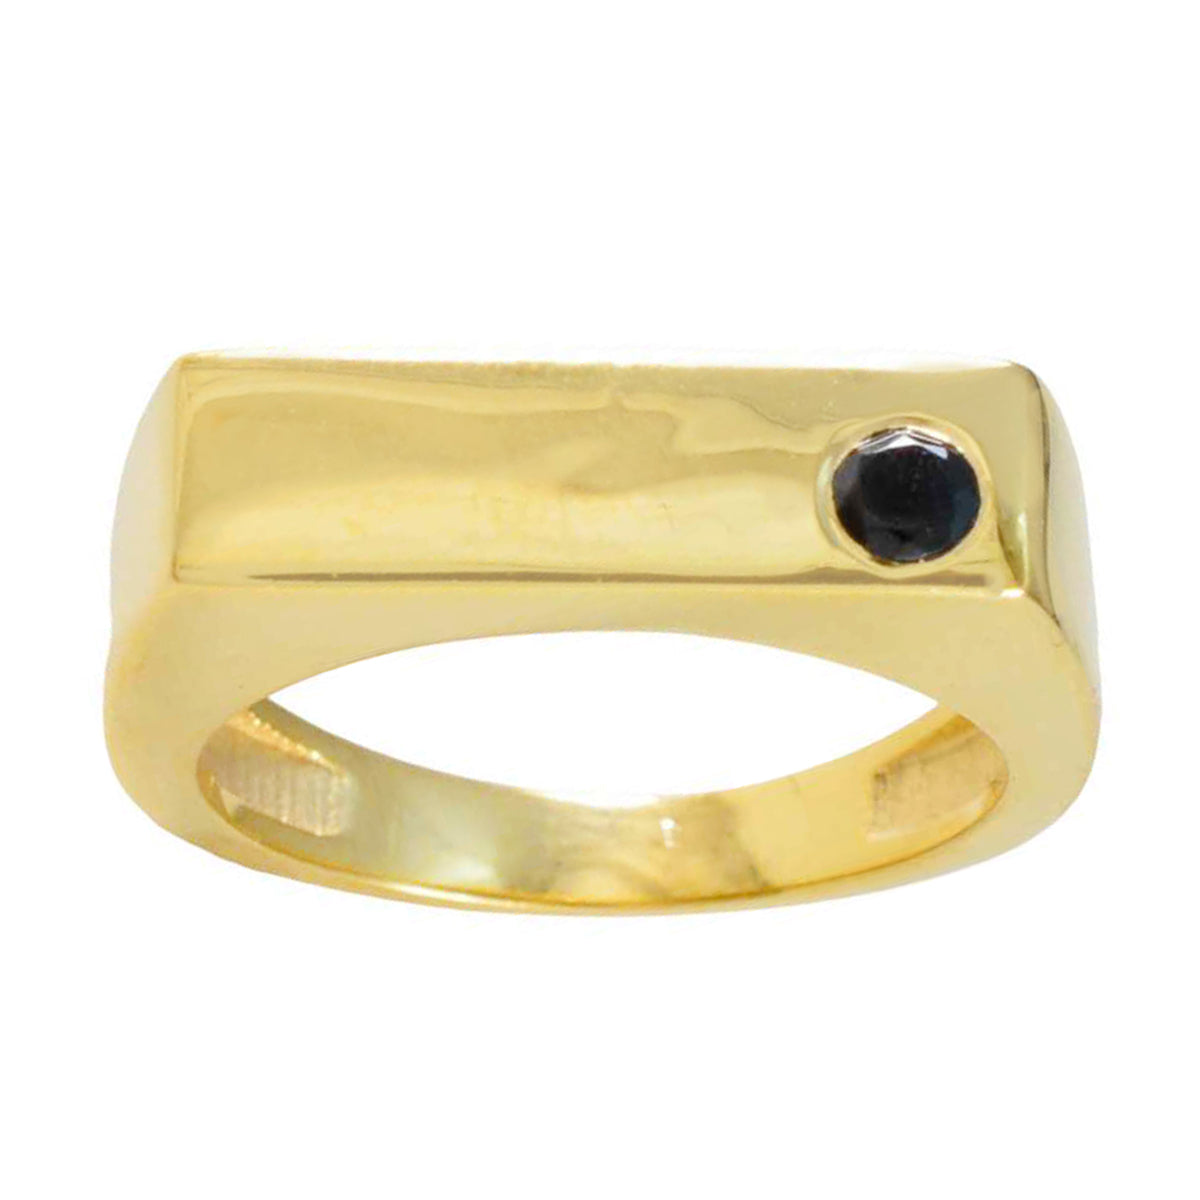 anello riyo perfetto in argento con placcatura in oro giallo con zaffiro blu a forma rotonda con castone con gioielli alla moda anello black friday